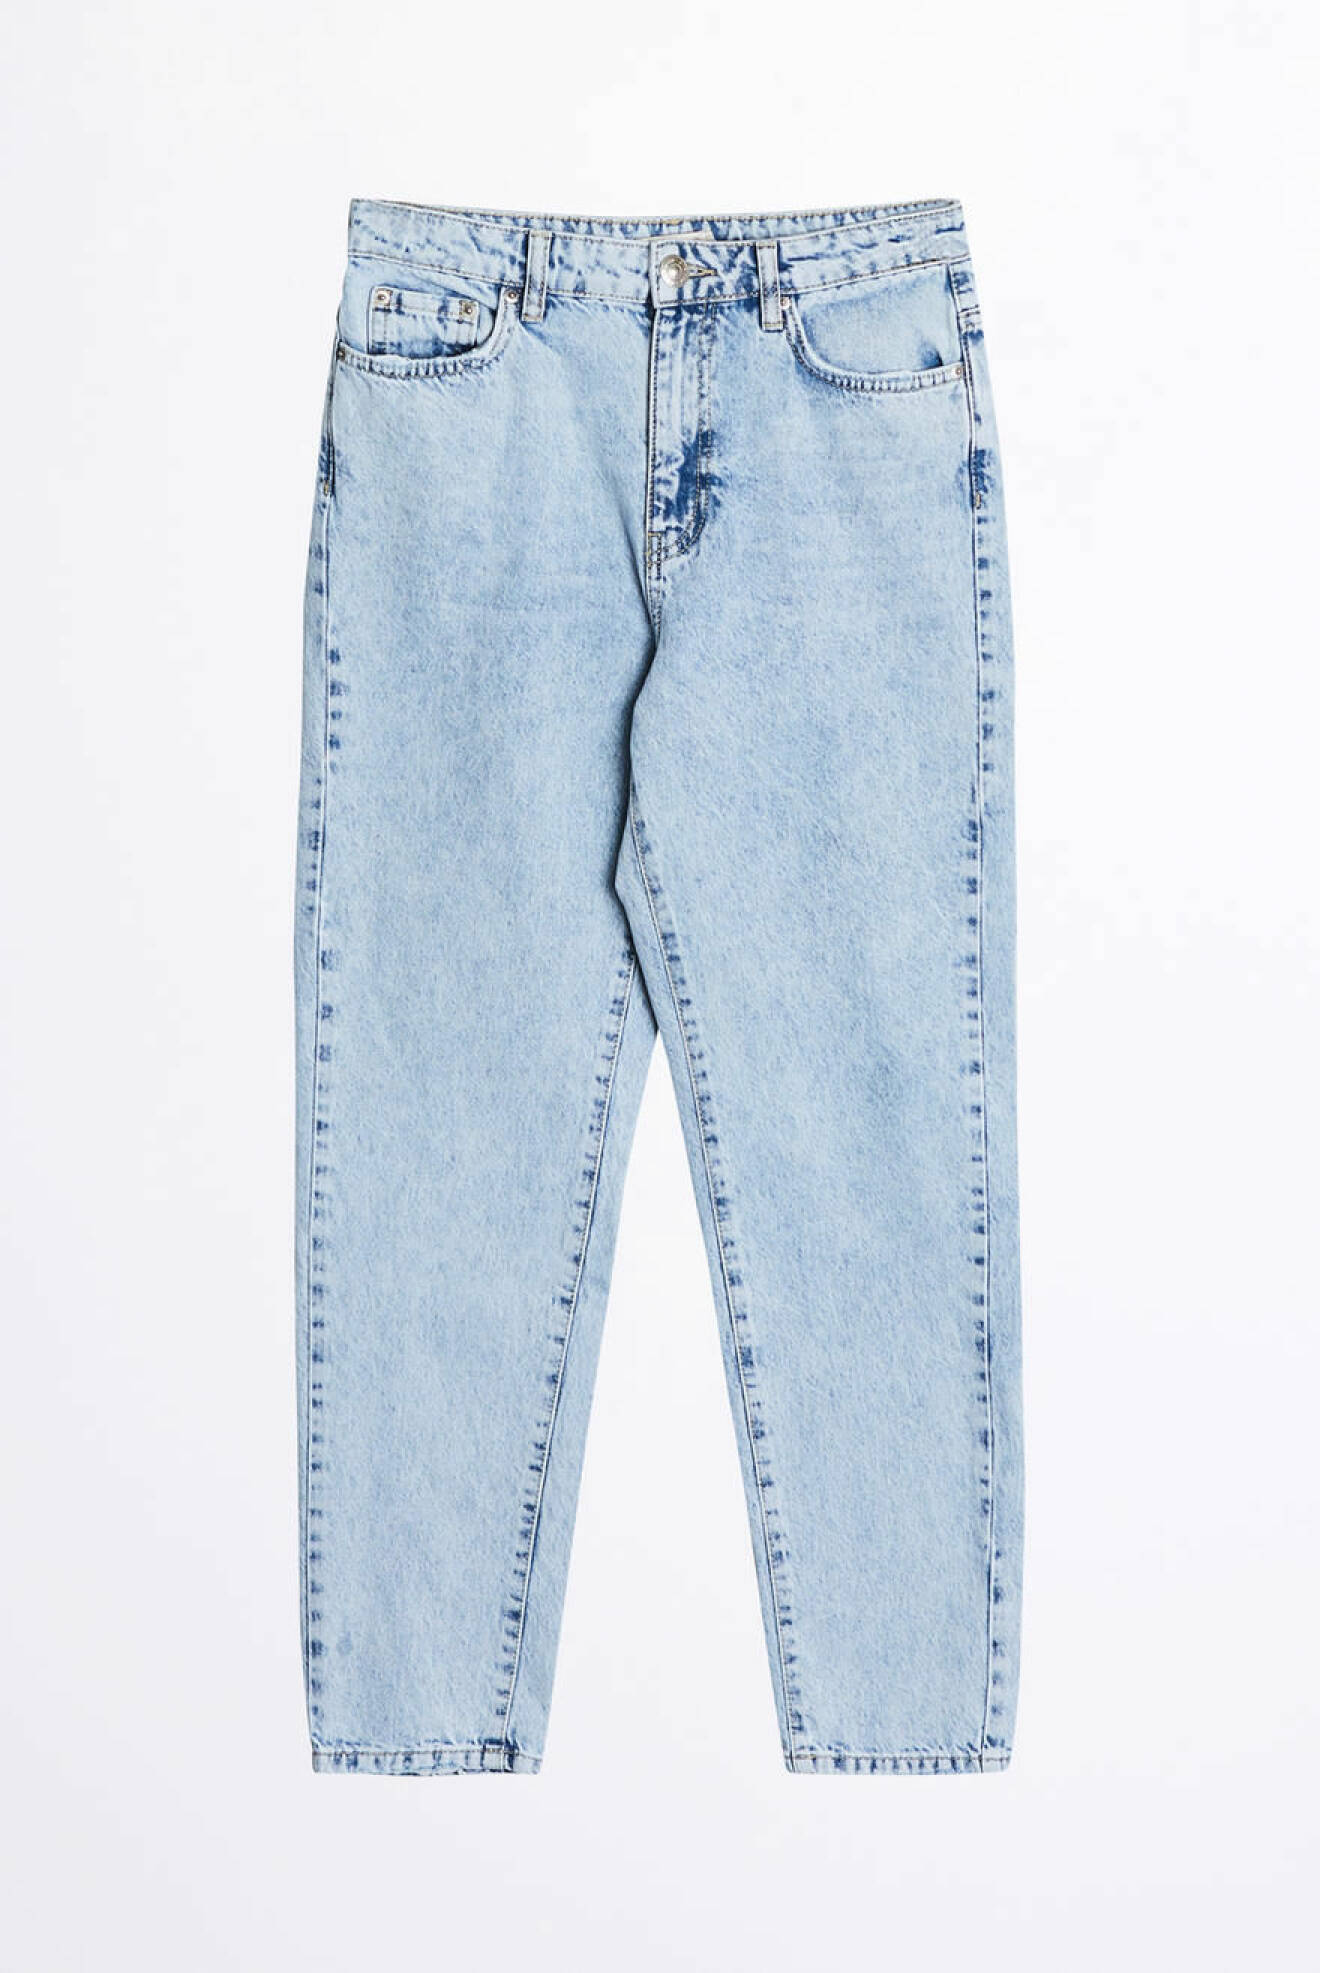 Stentvättade jeans i en klassisk mom-jeans modell från Gina Tricot.